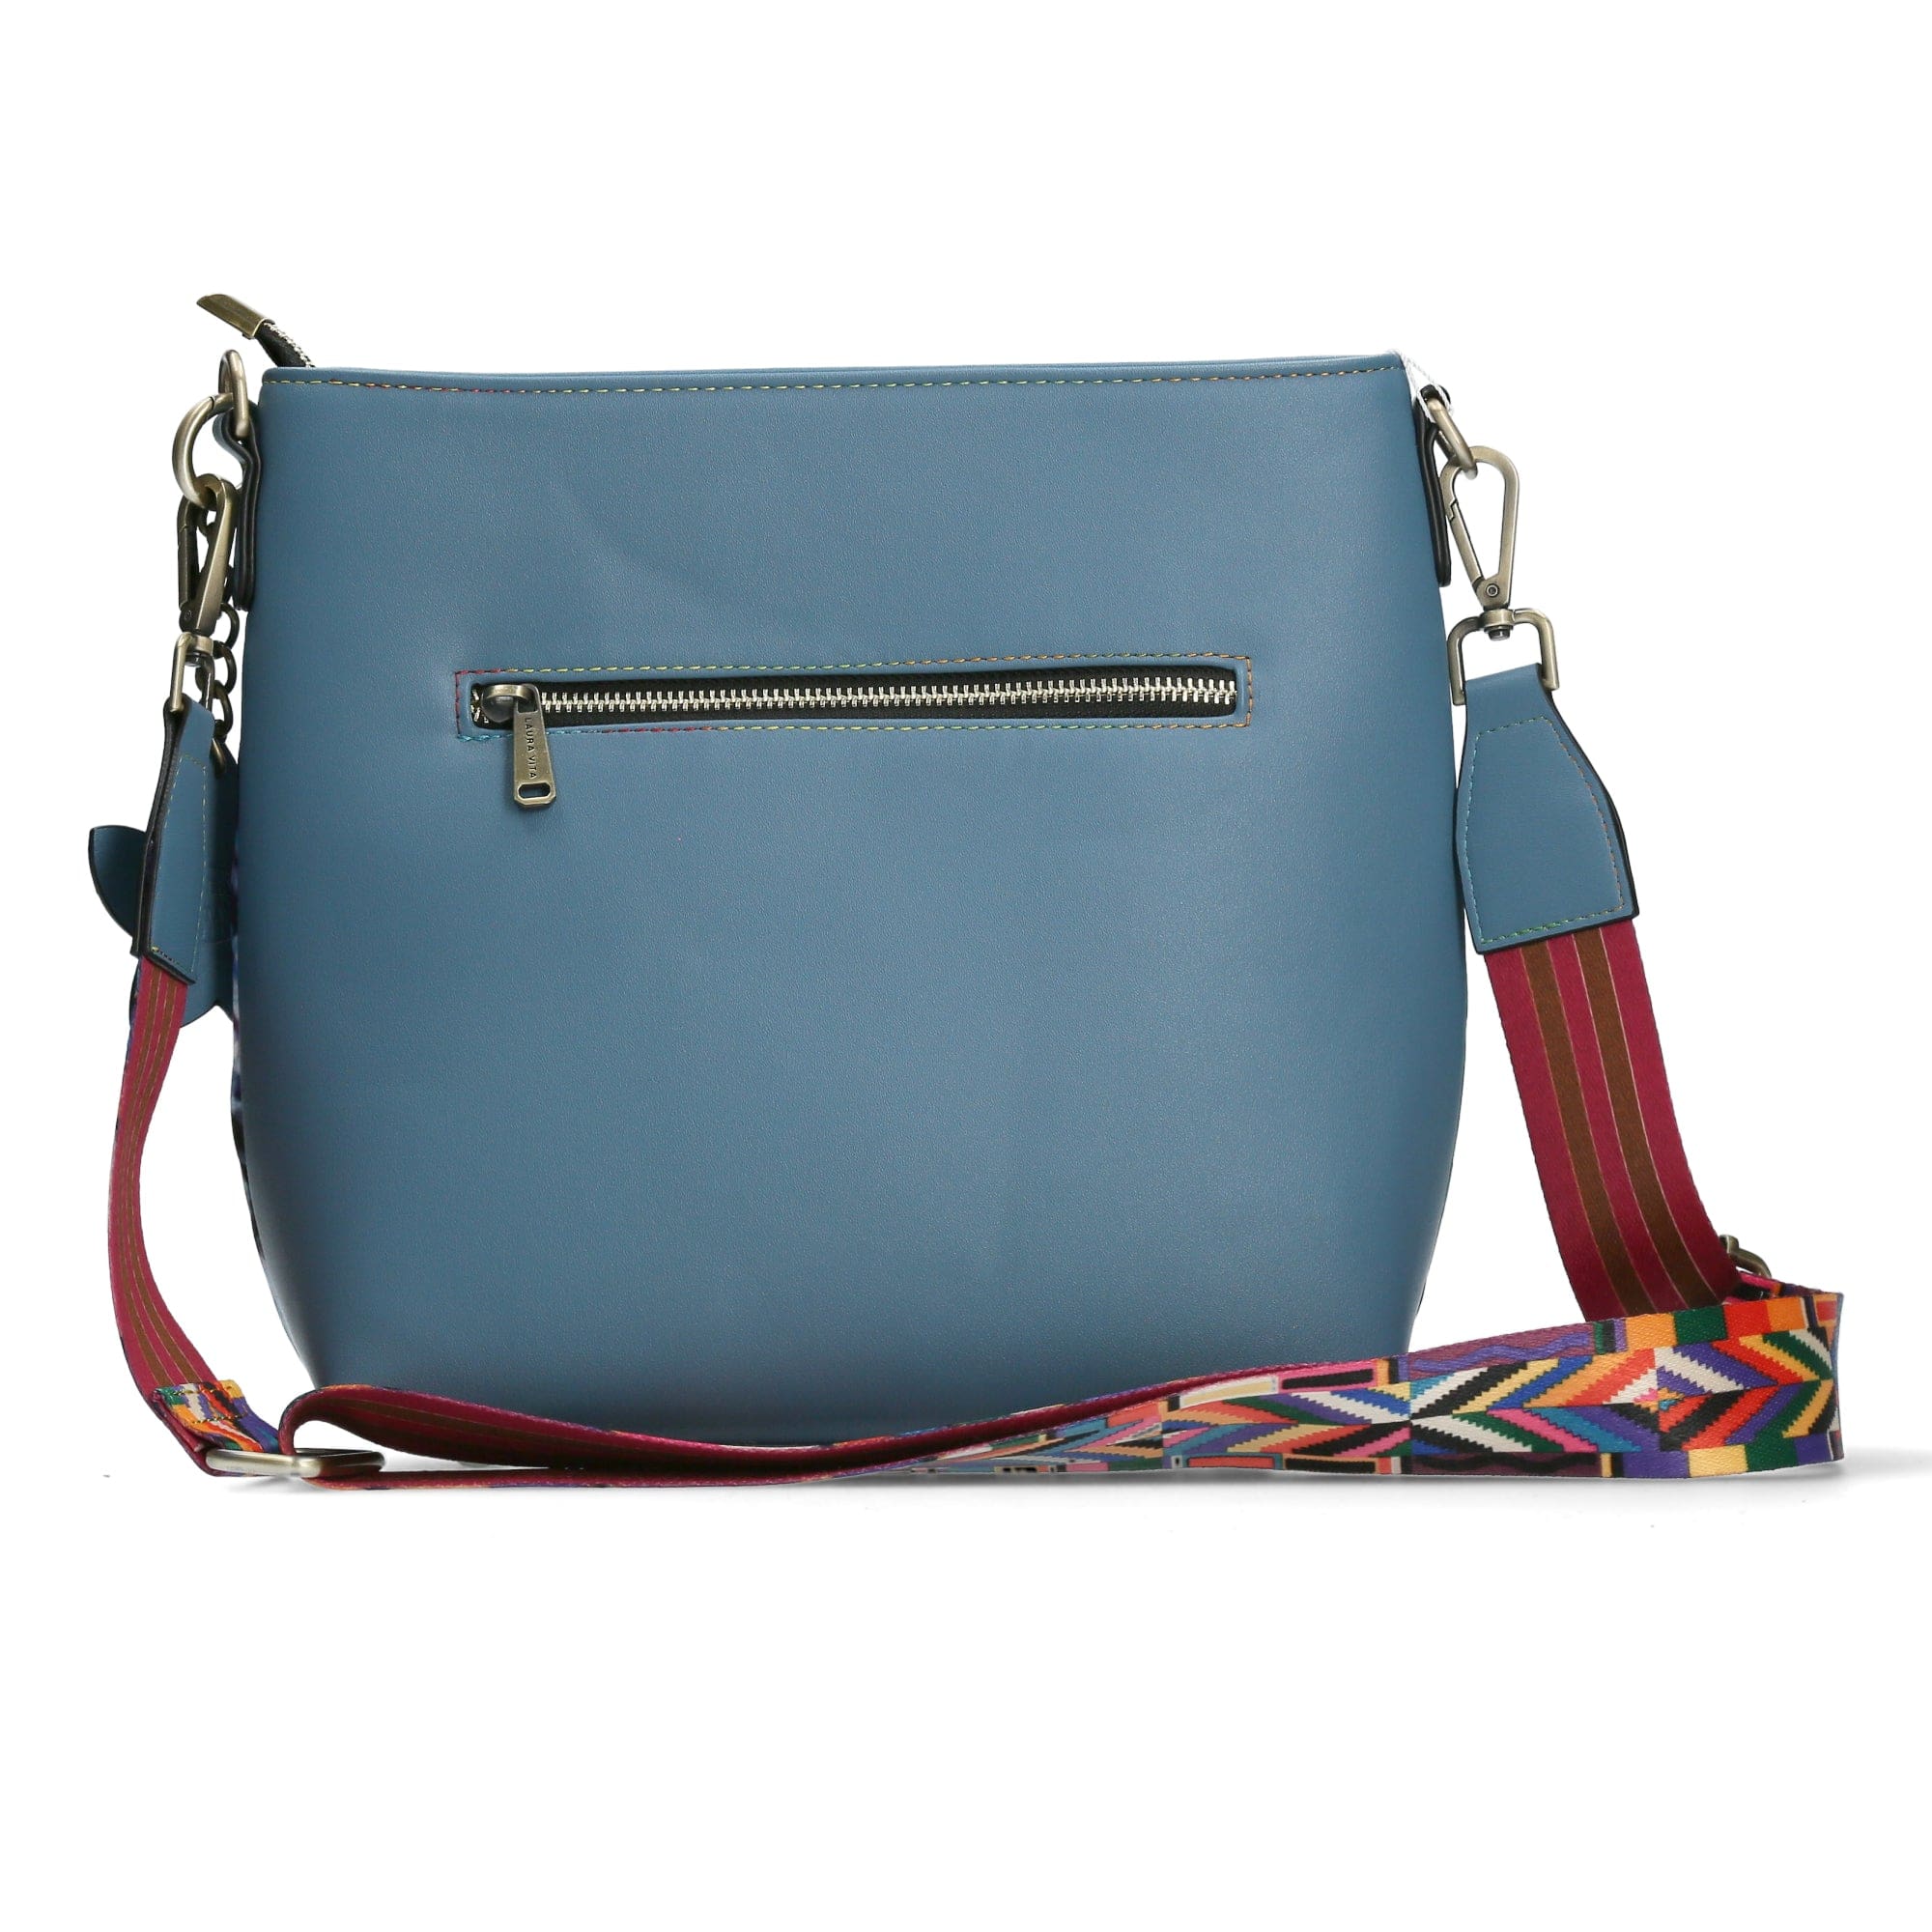 BAG ADRA 01 - Turquoise - Bag